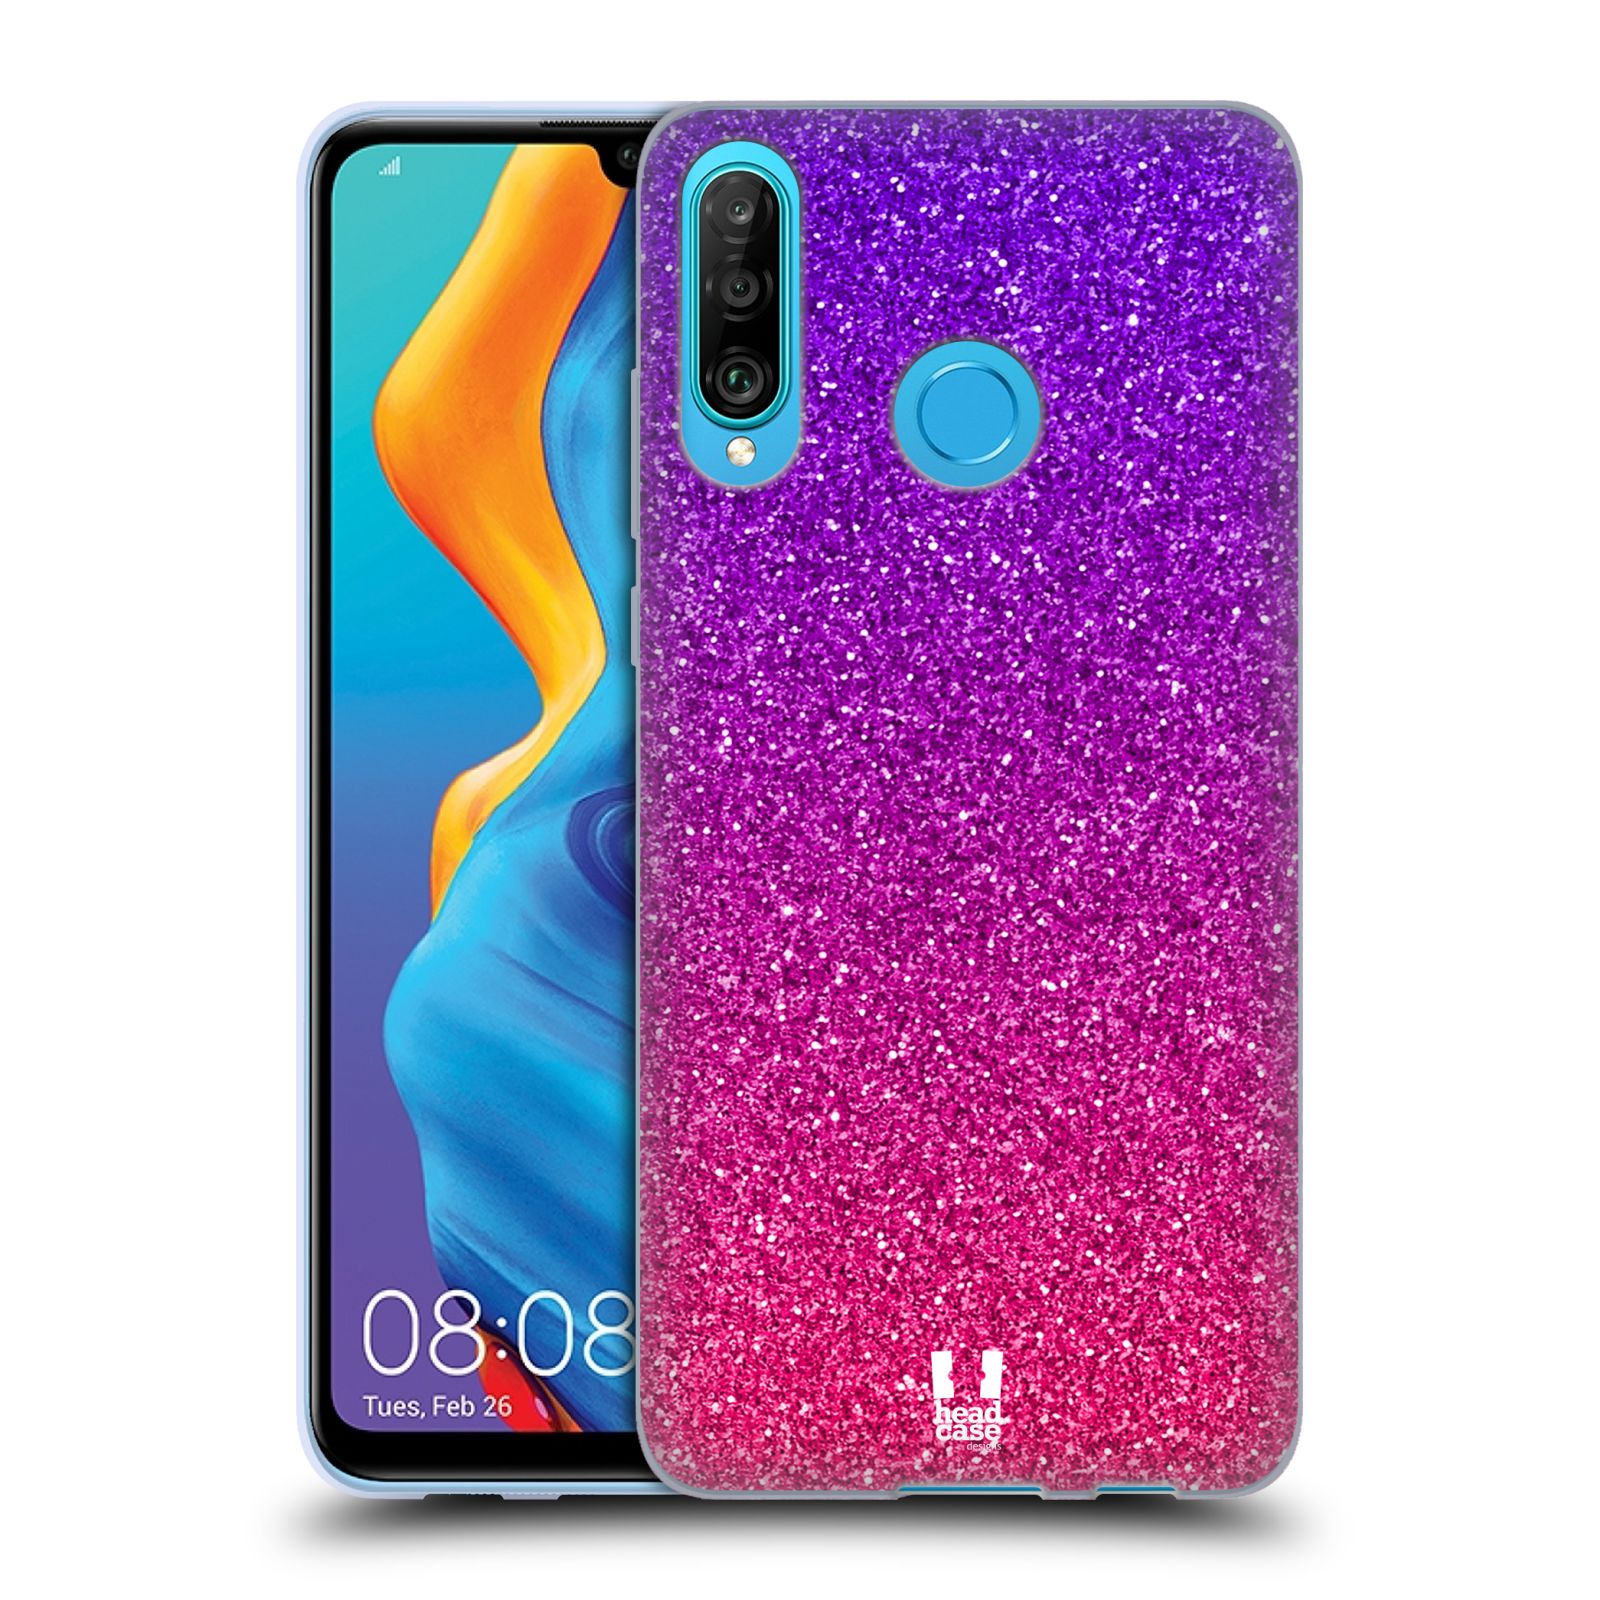 Silikonové pouzdro na mobil Huawei P30 Lite - Head Case - Mix Pink (Silikonový kryt, obal, pouzdro na mobilní telefon Huawei P30 Lite Dual Sim (MAR-L01A, MAR-L21A, MAR-LX1A) s motivem Mix Pink)